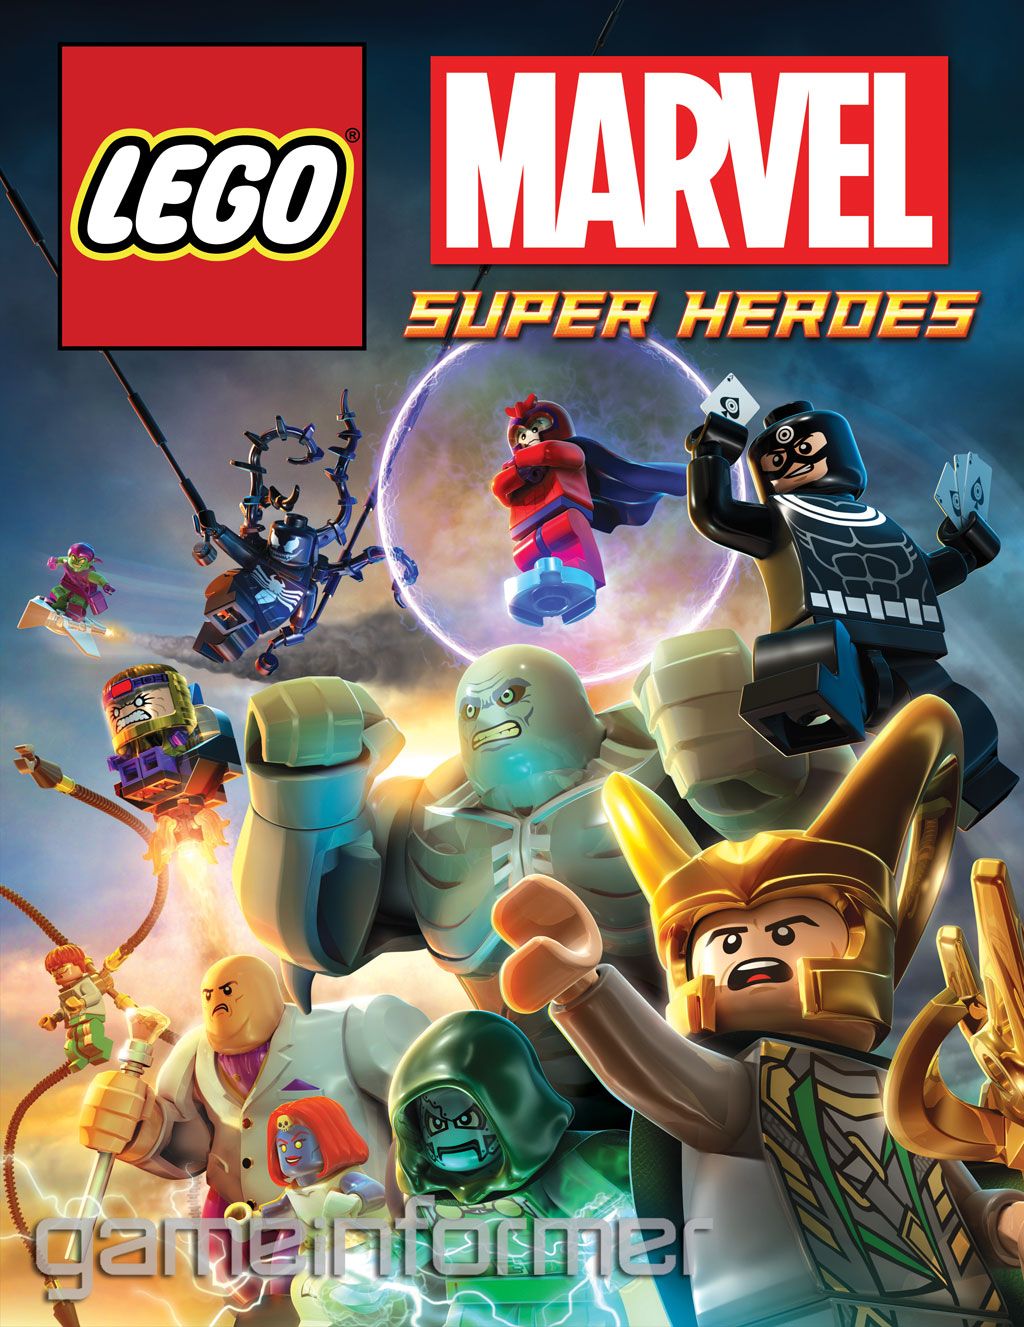 NYCC: More LEGO Marvel Super Heroes Details - FBTB